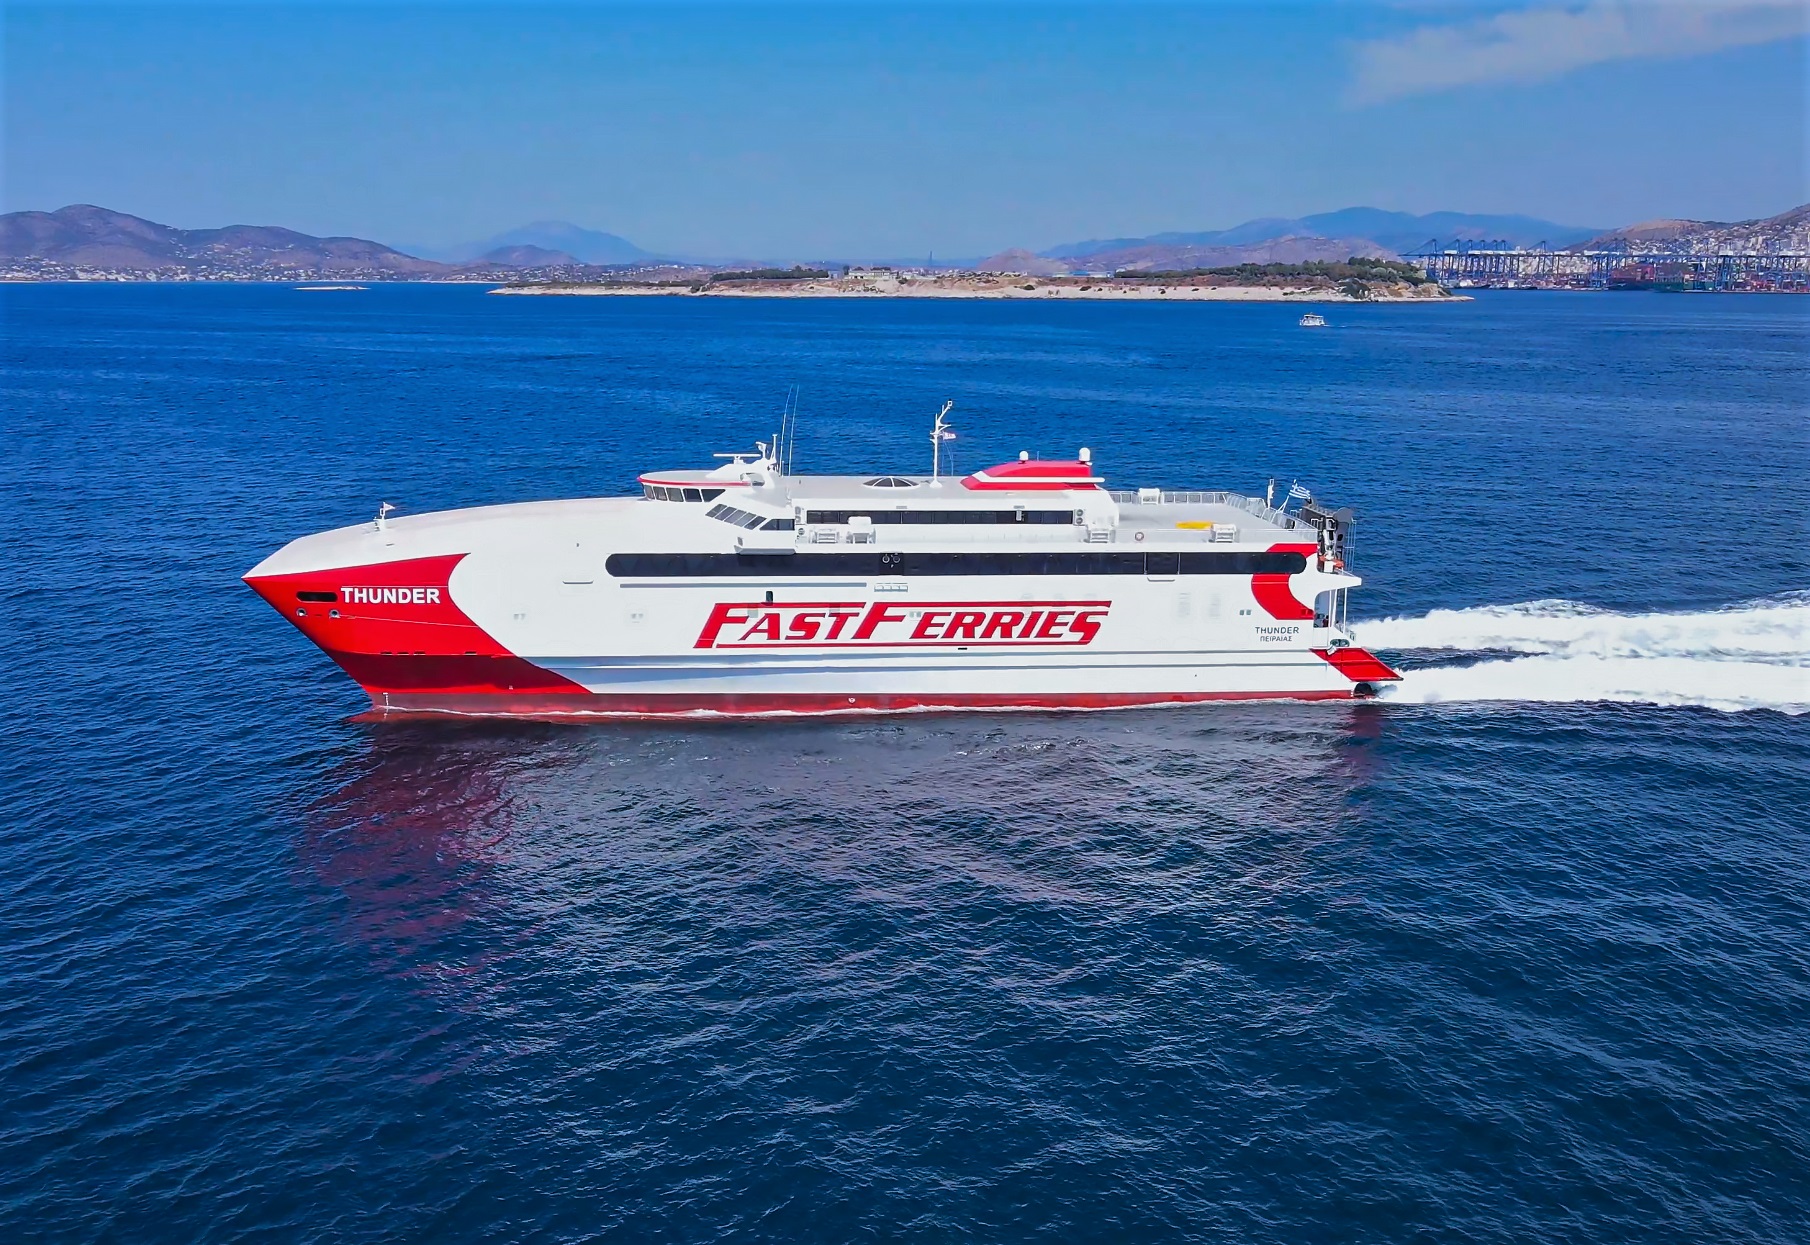 Nέο ταχύπλοο στην ακτοπλοΐα από την Fast Ferries